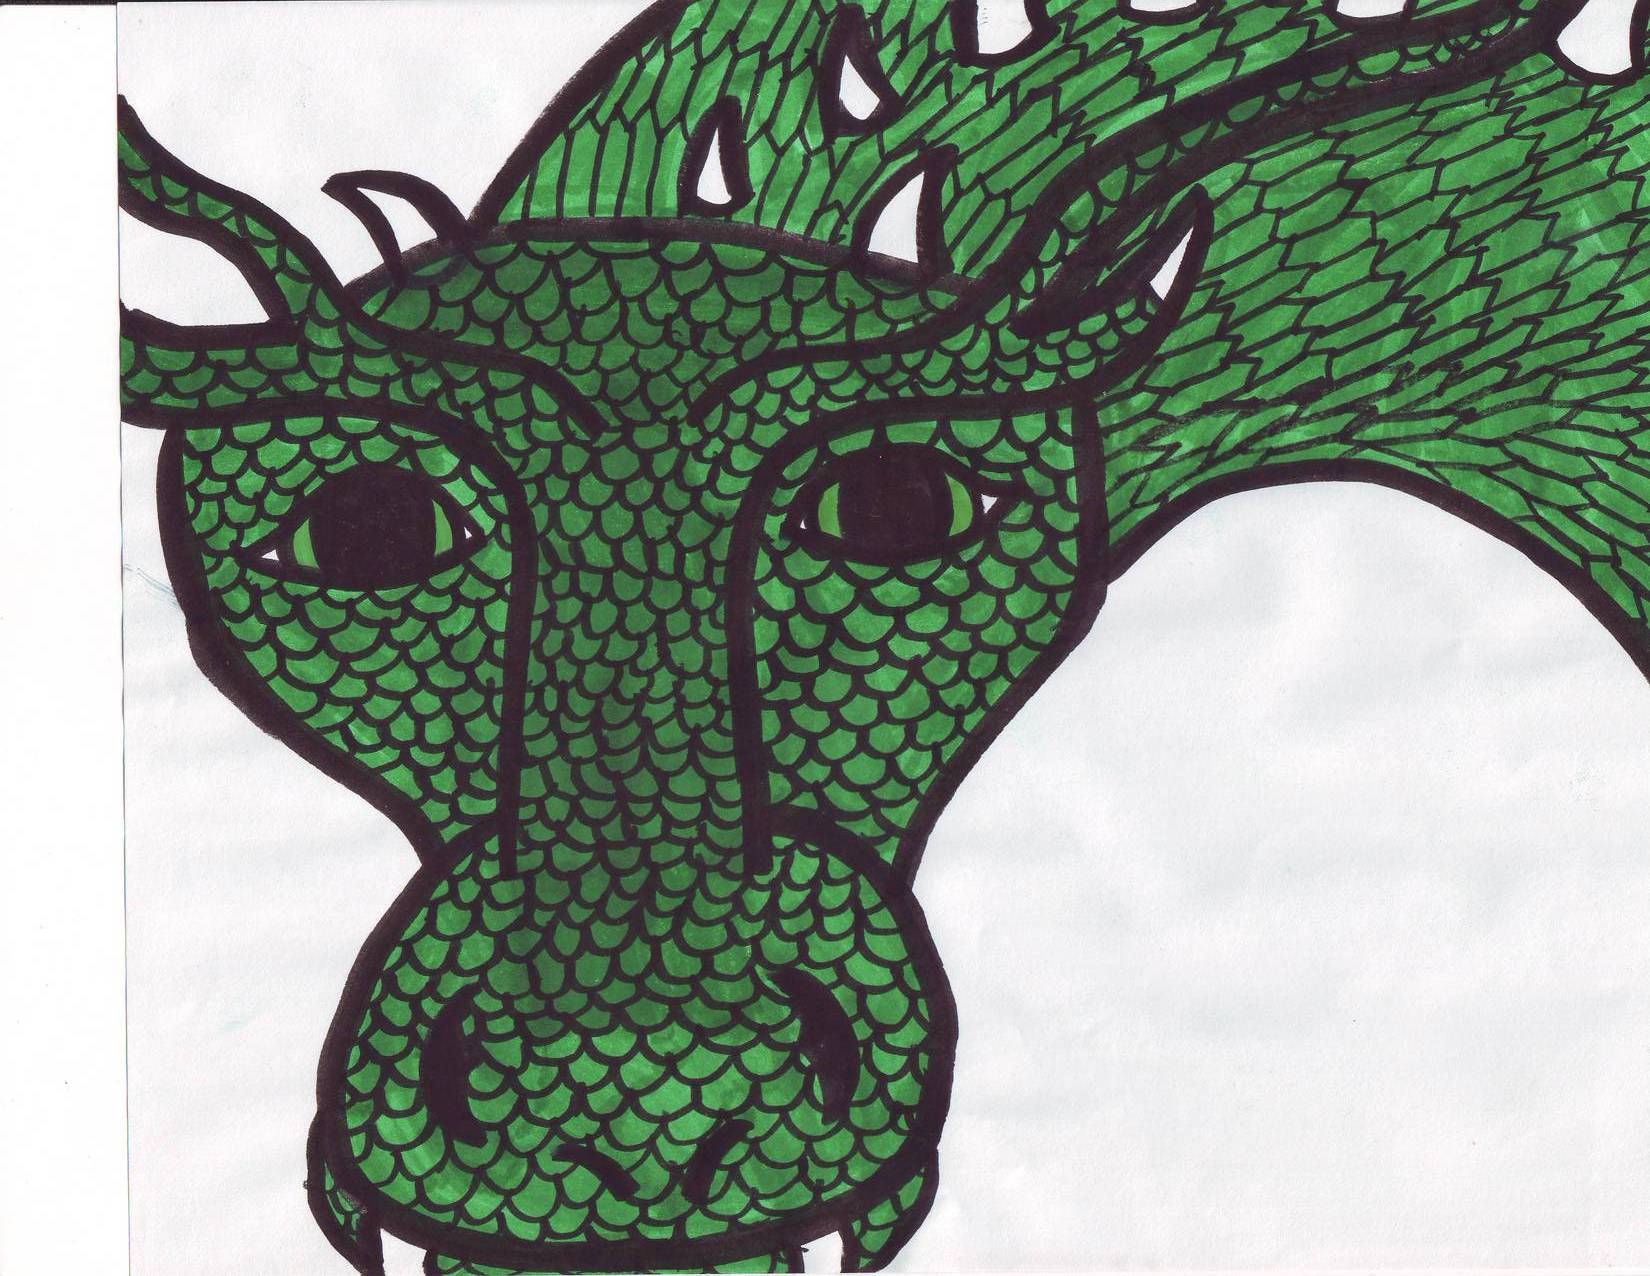 Third Dragon by Ferret_Avatar22